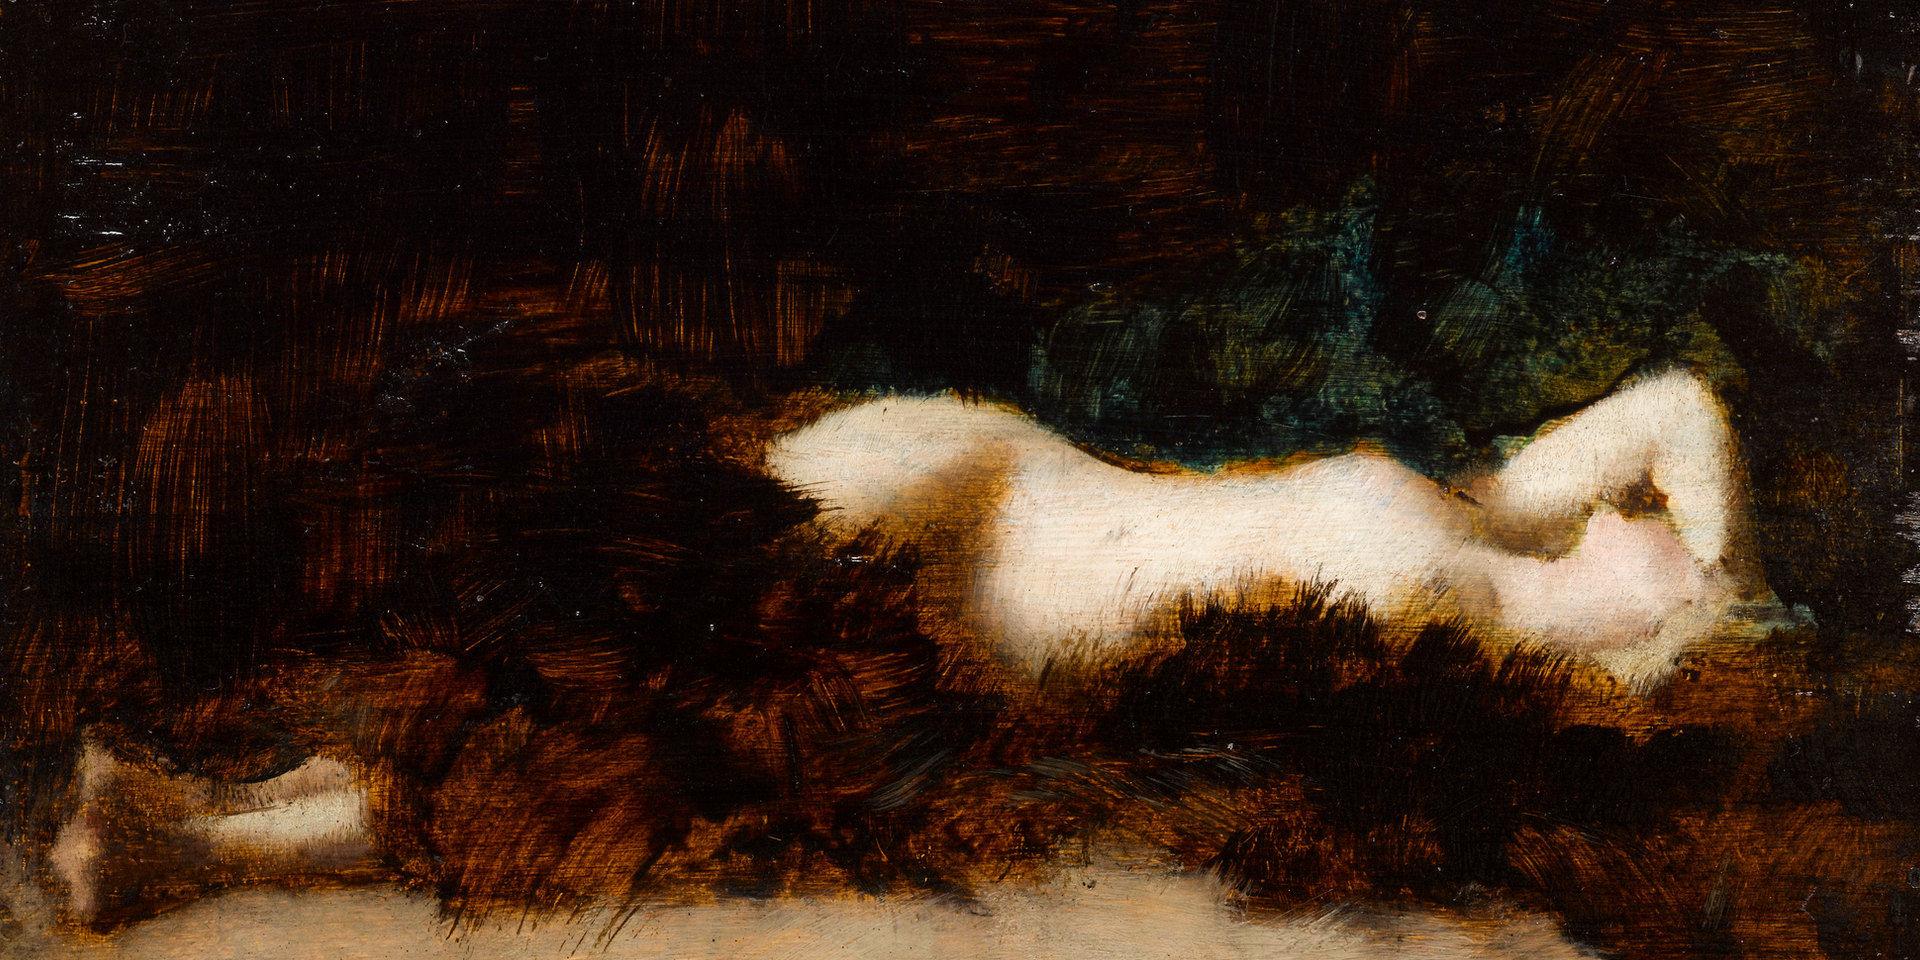 Femme nue couchée dans une fourrure